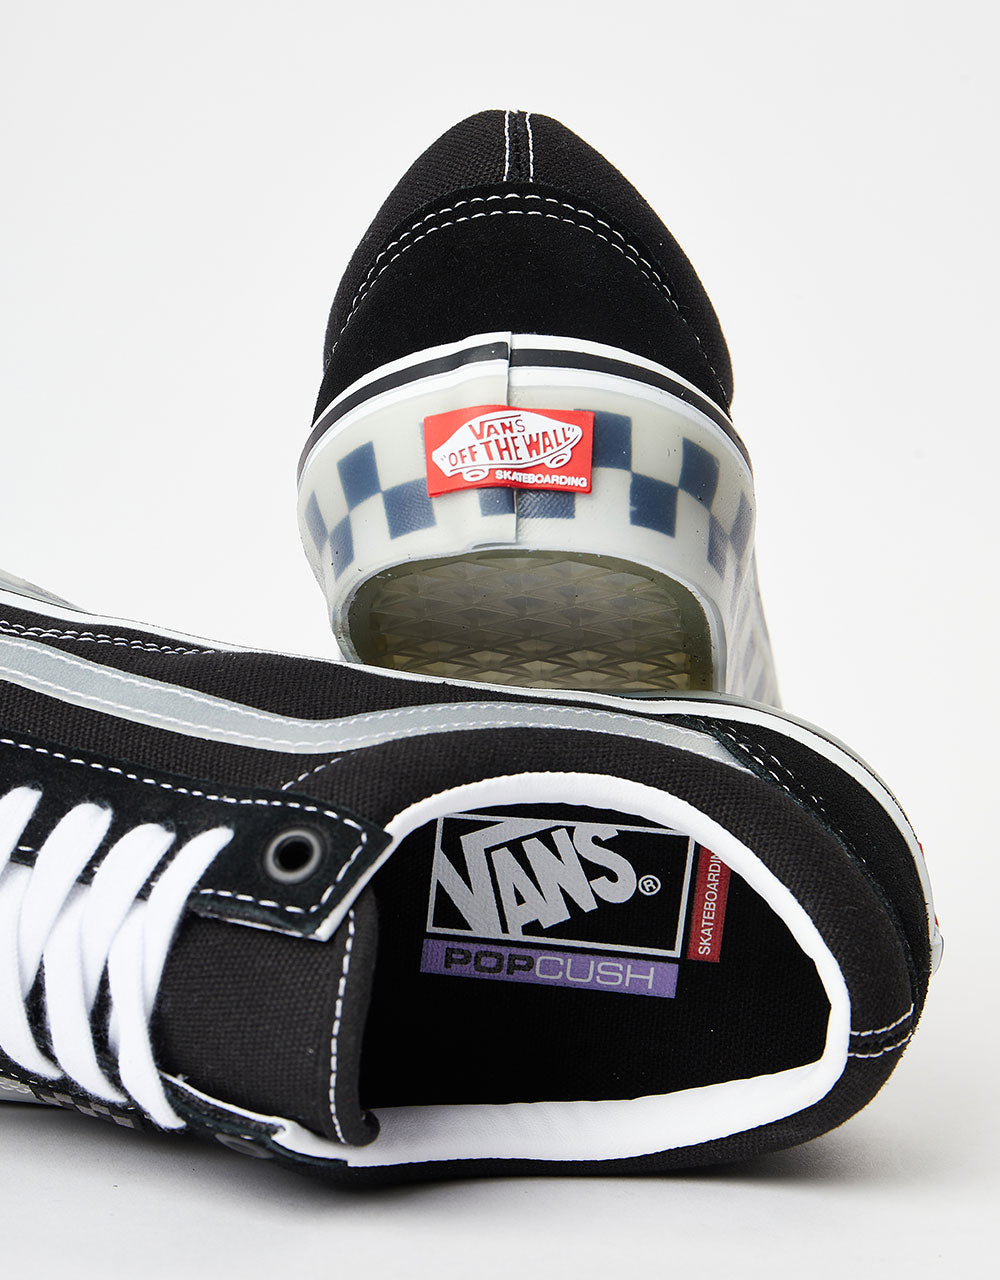 Vans Skate Old Skool Shoes - (Translucent Rubber) Black/Clear